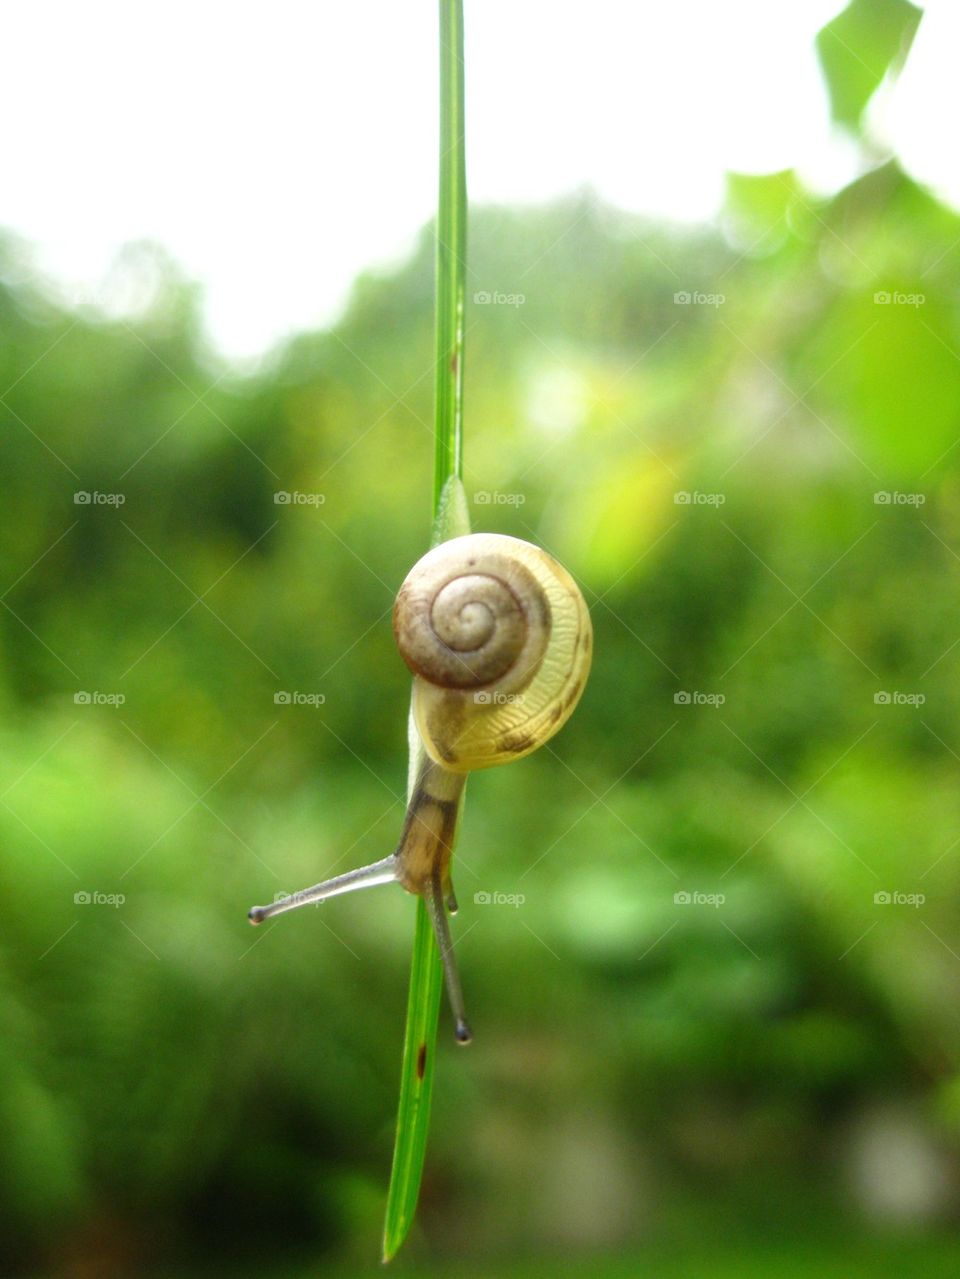 Little snail, where do you go?